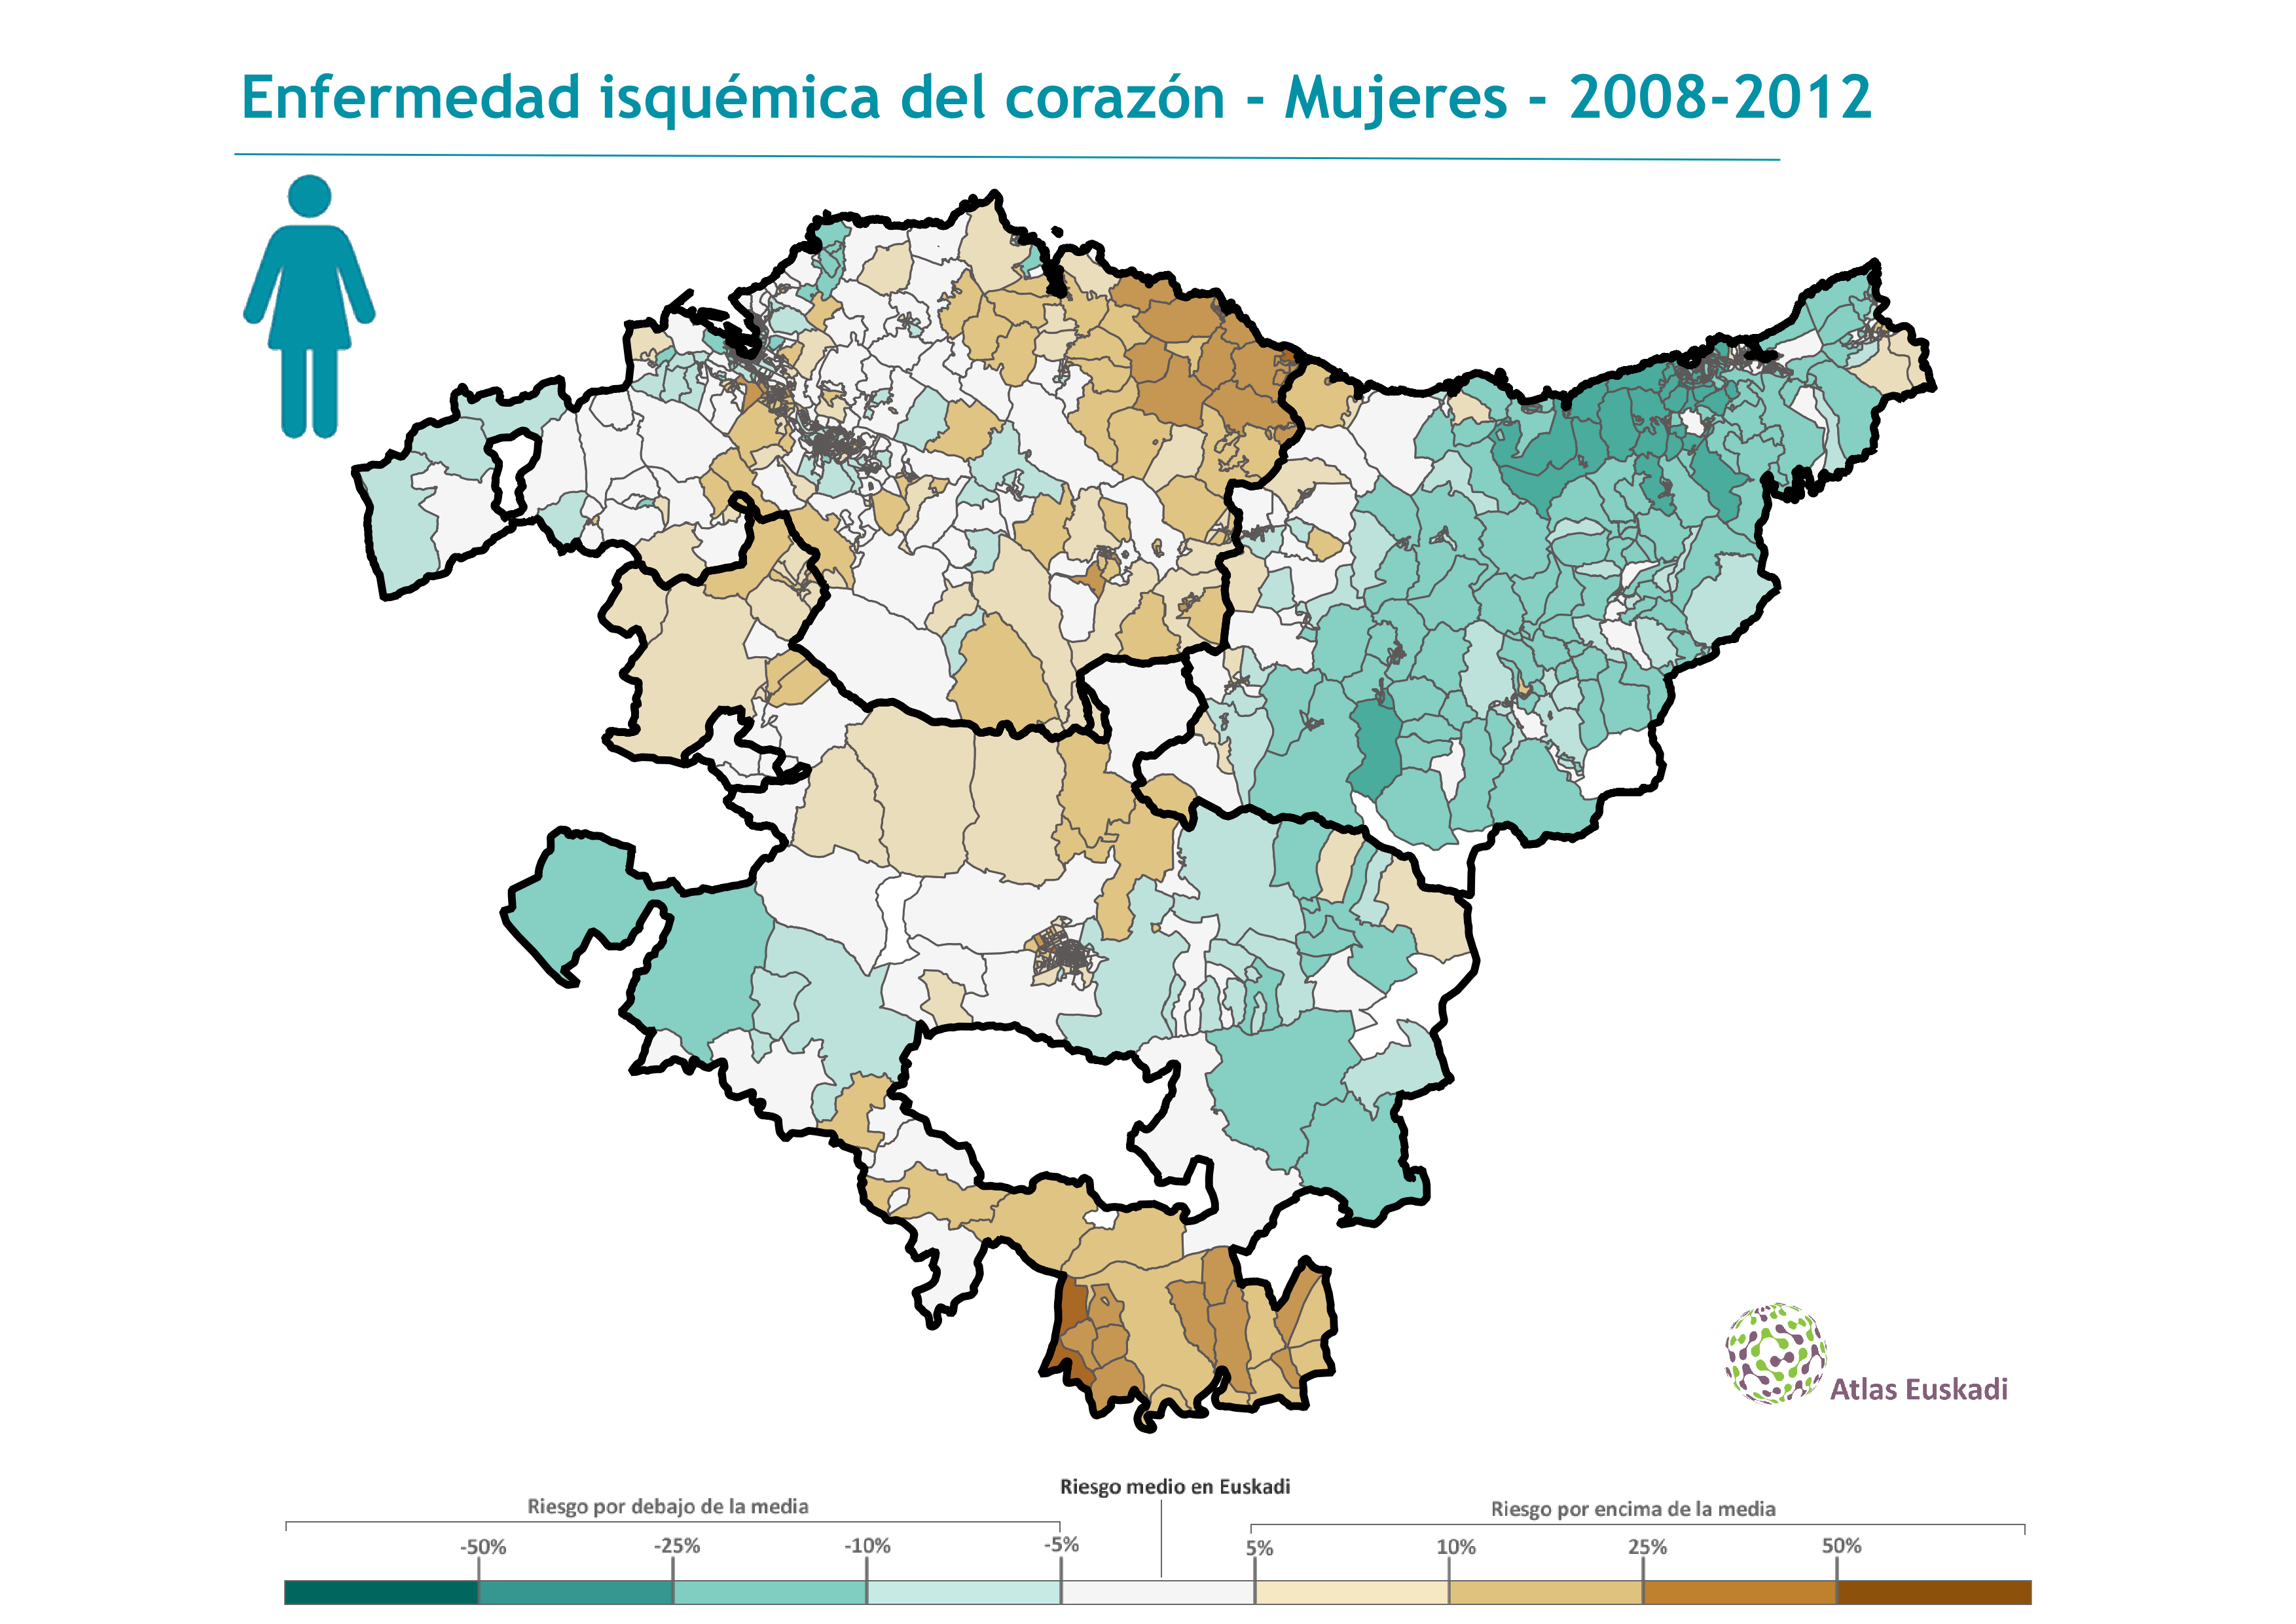 Enfermedad isquémica del corazón mujeres  2008-2012 Euskadi